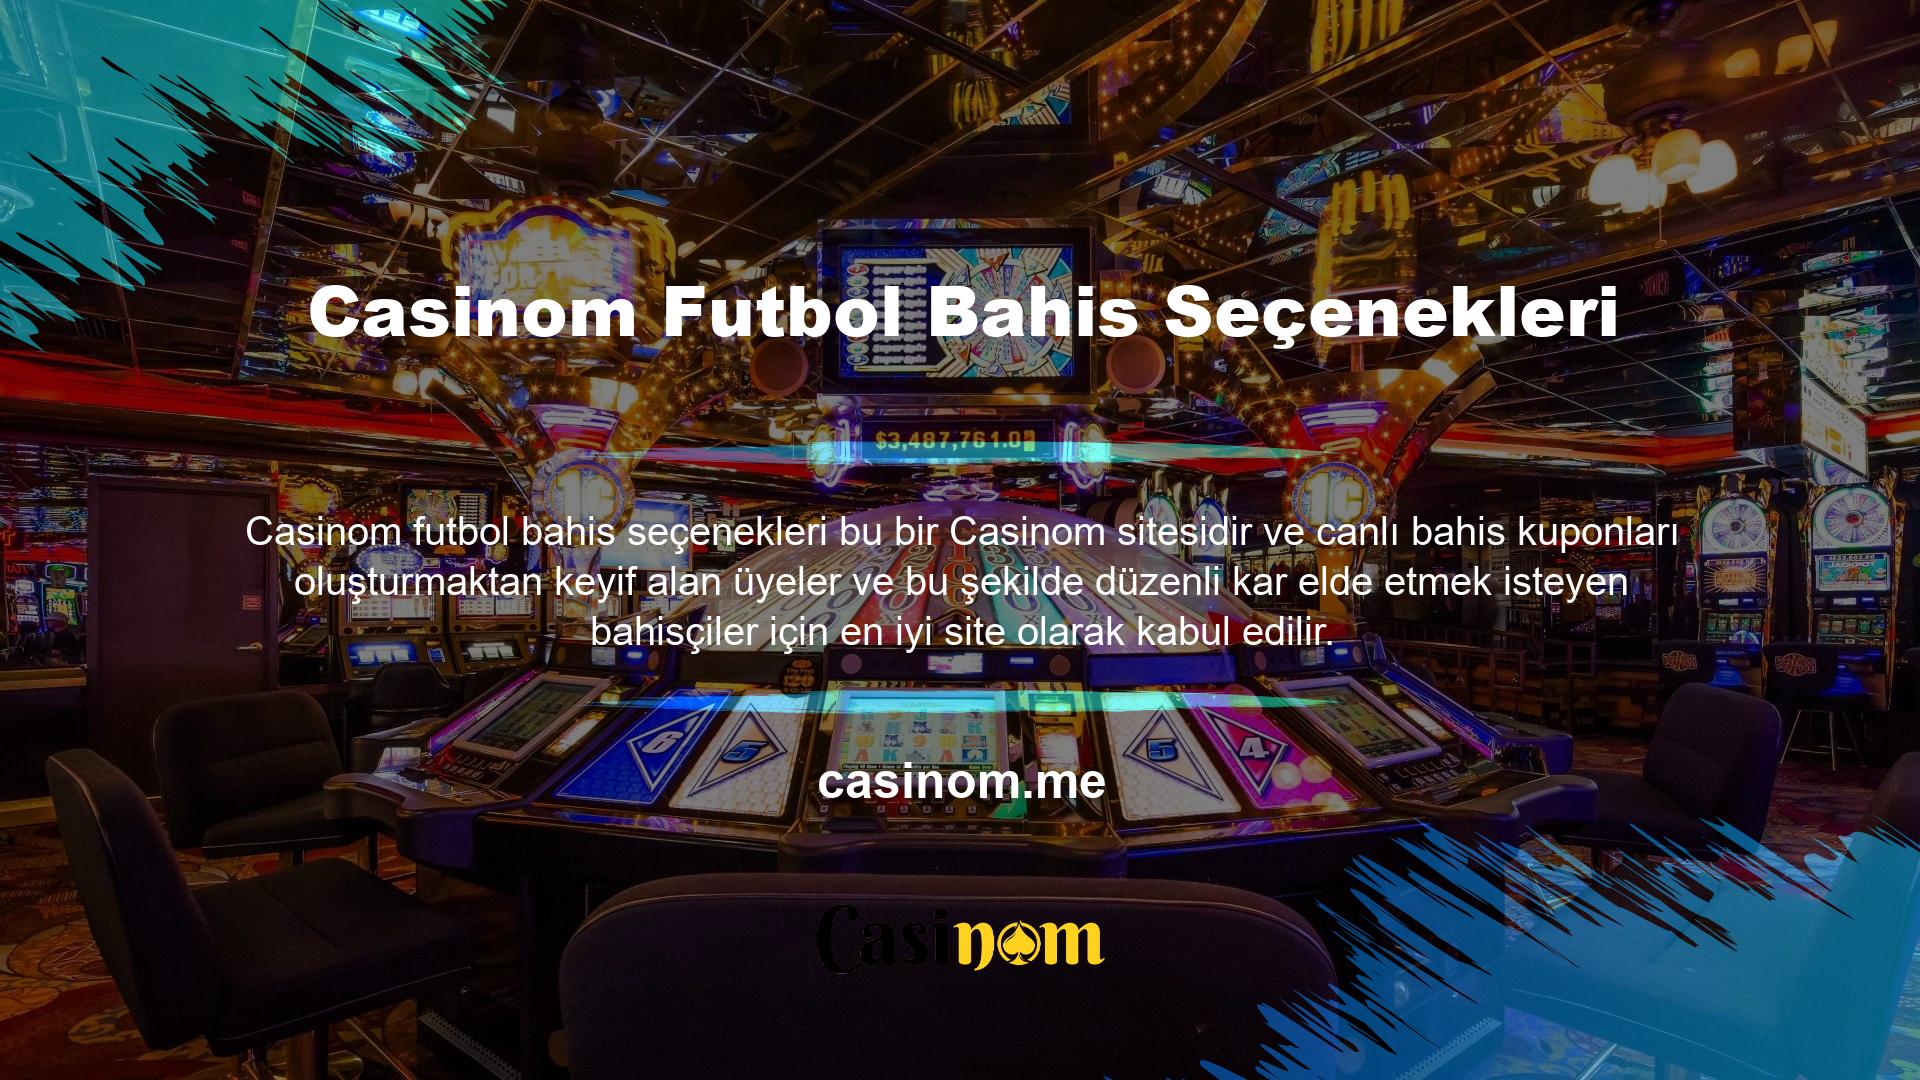 Canlı bahis tutkunları, çeşitli sebeplerden dolayı Casinom futbol bahis sitesini seviyor